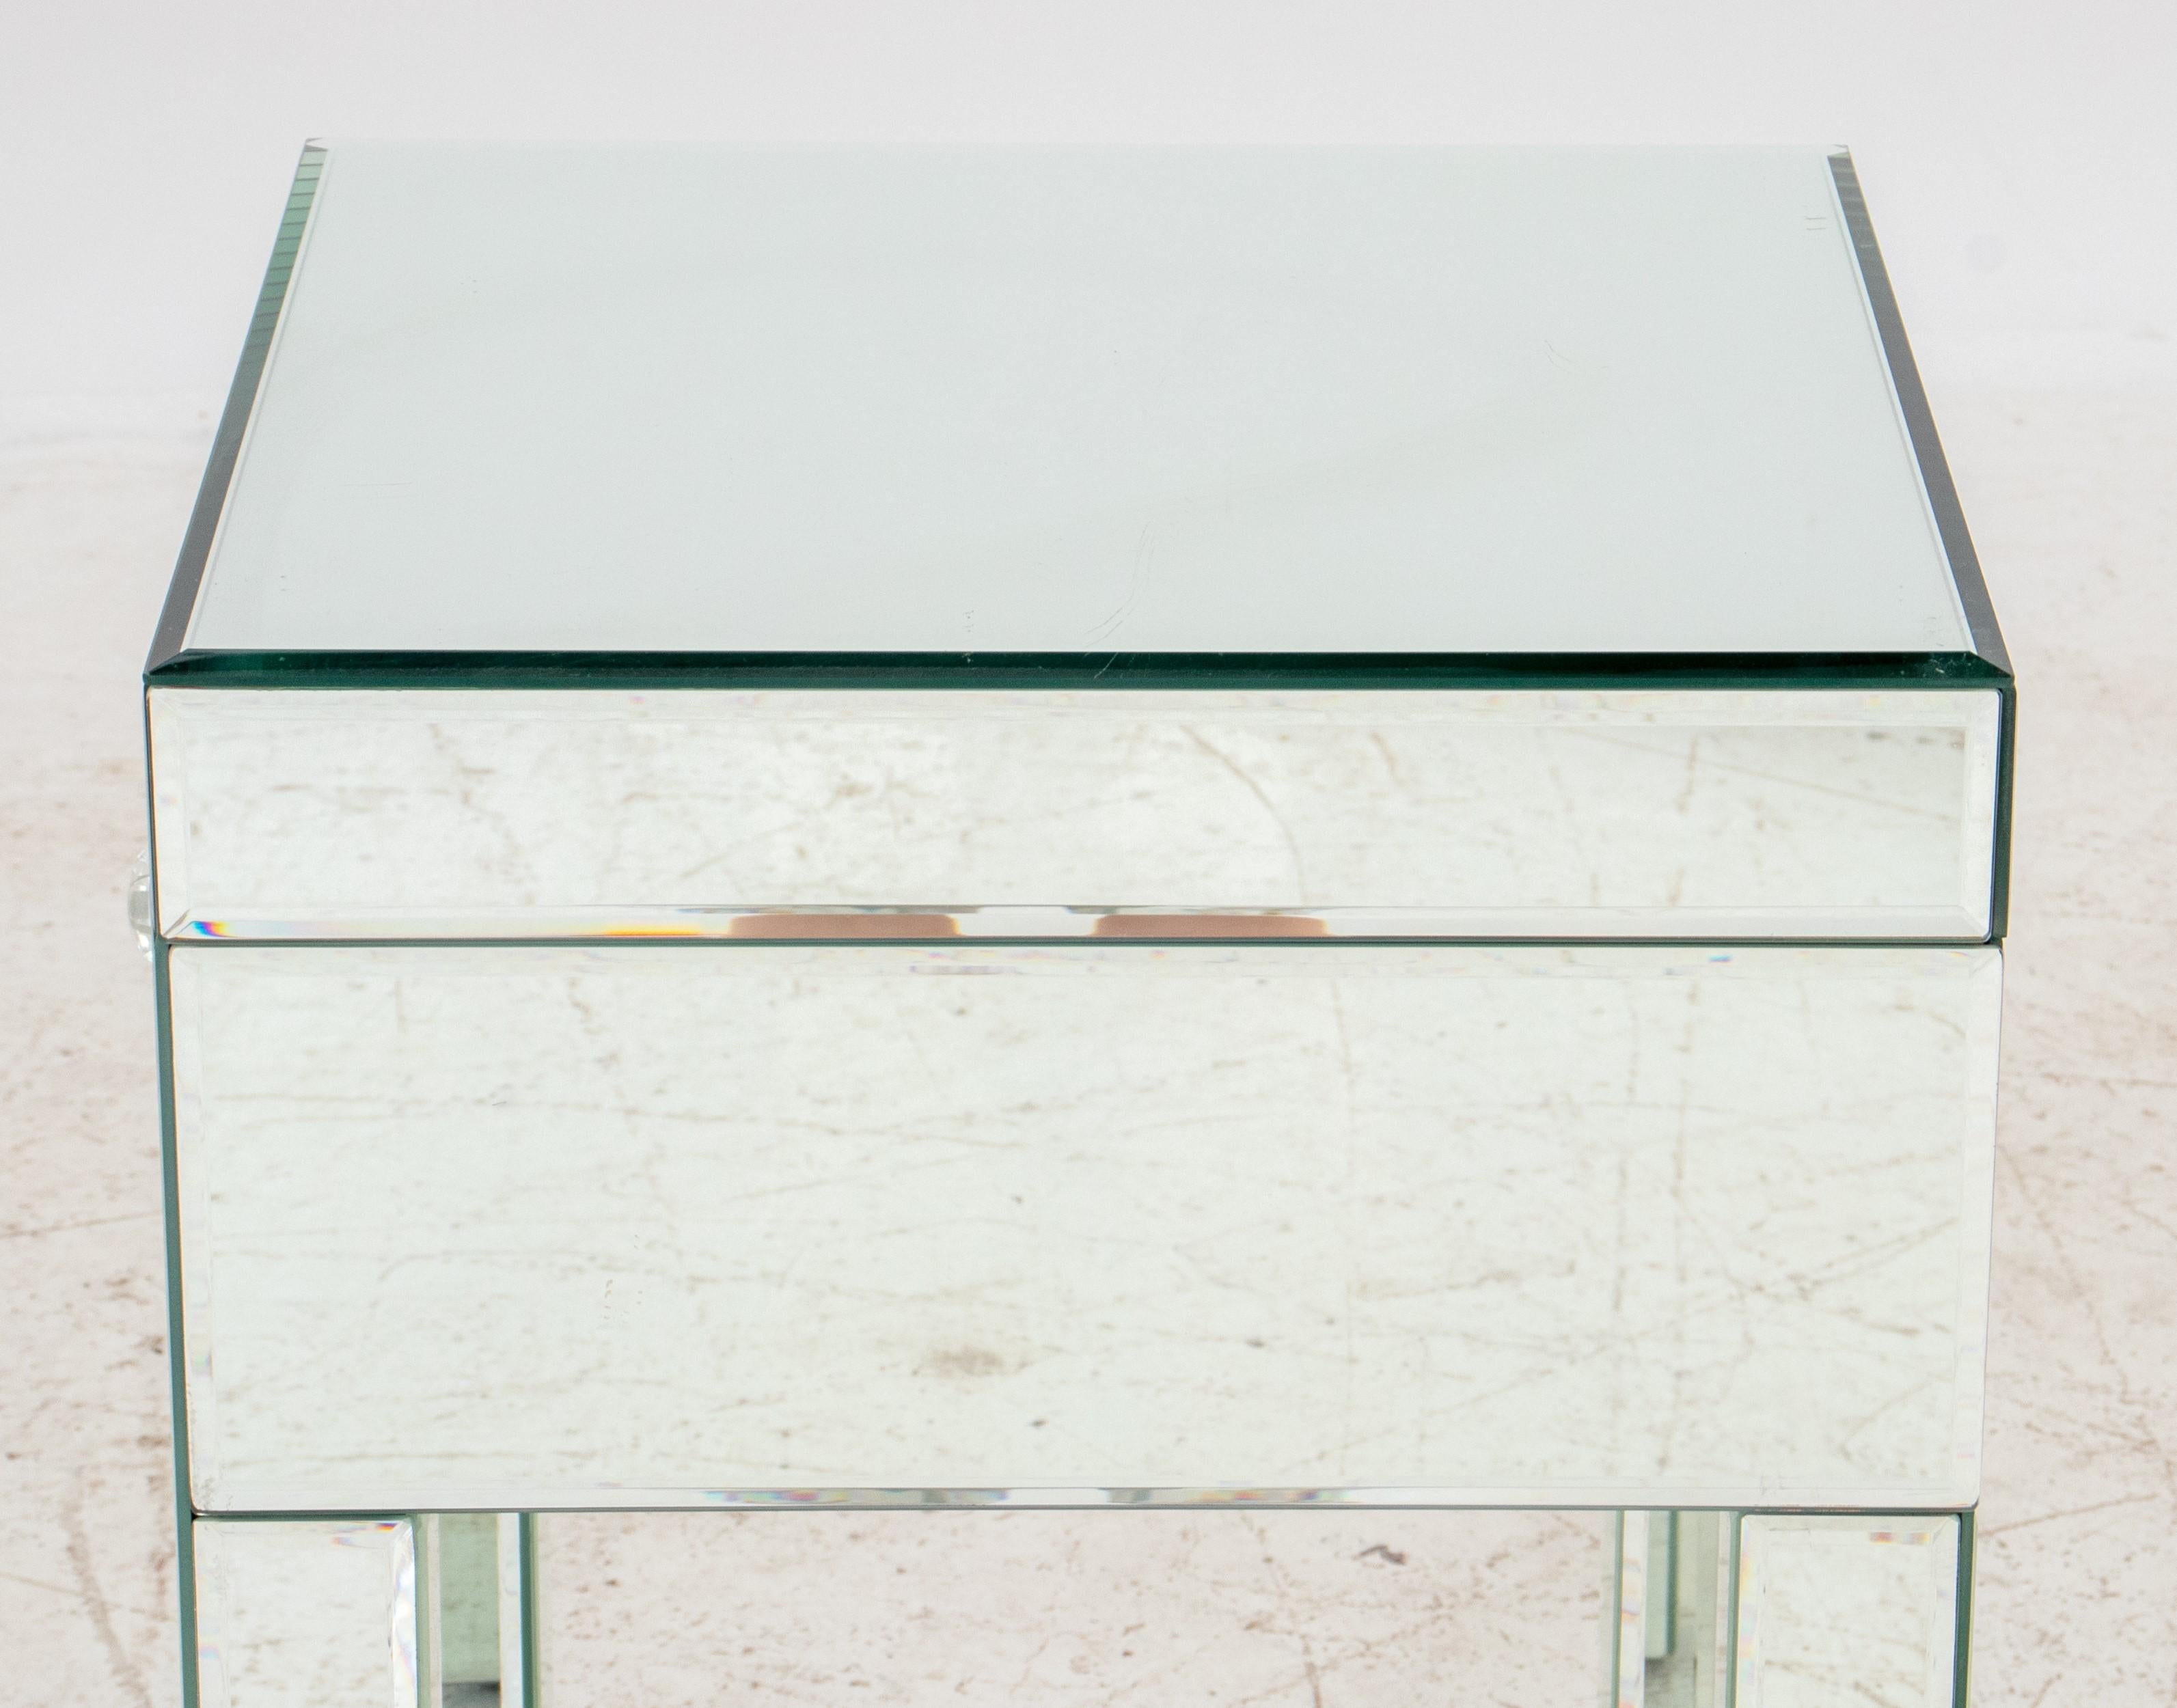  Table d'appoint en miroir, moderne et élégante, avec les caractéristiques suivantes :

Forme : Carré - Le sommet et la base sont de forme carrée.
MATERIAL : Miroir - Toute la surface de la table, y compris la façade des tiroirs, est recouverte de